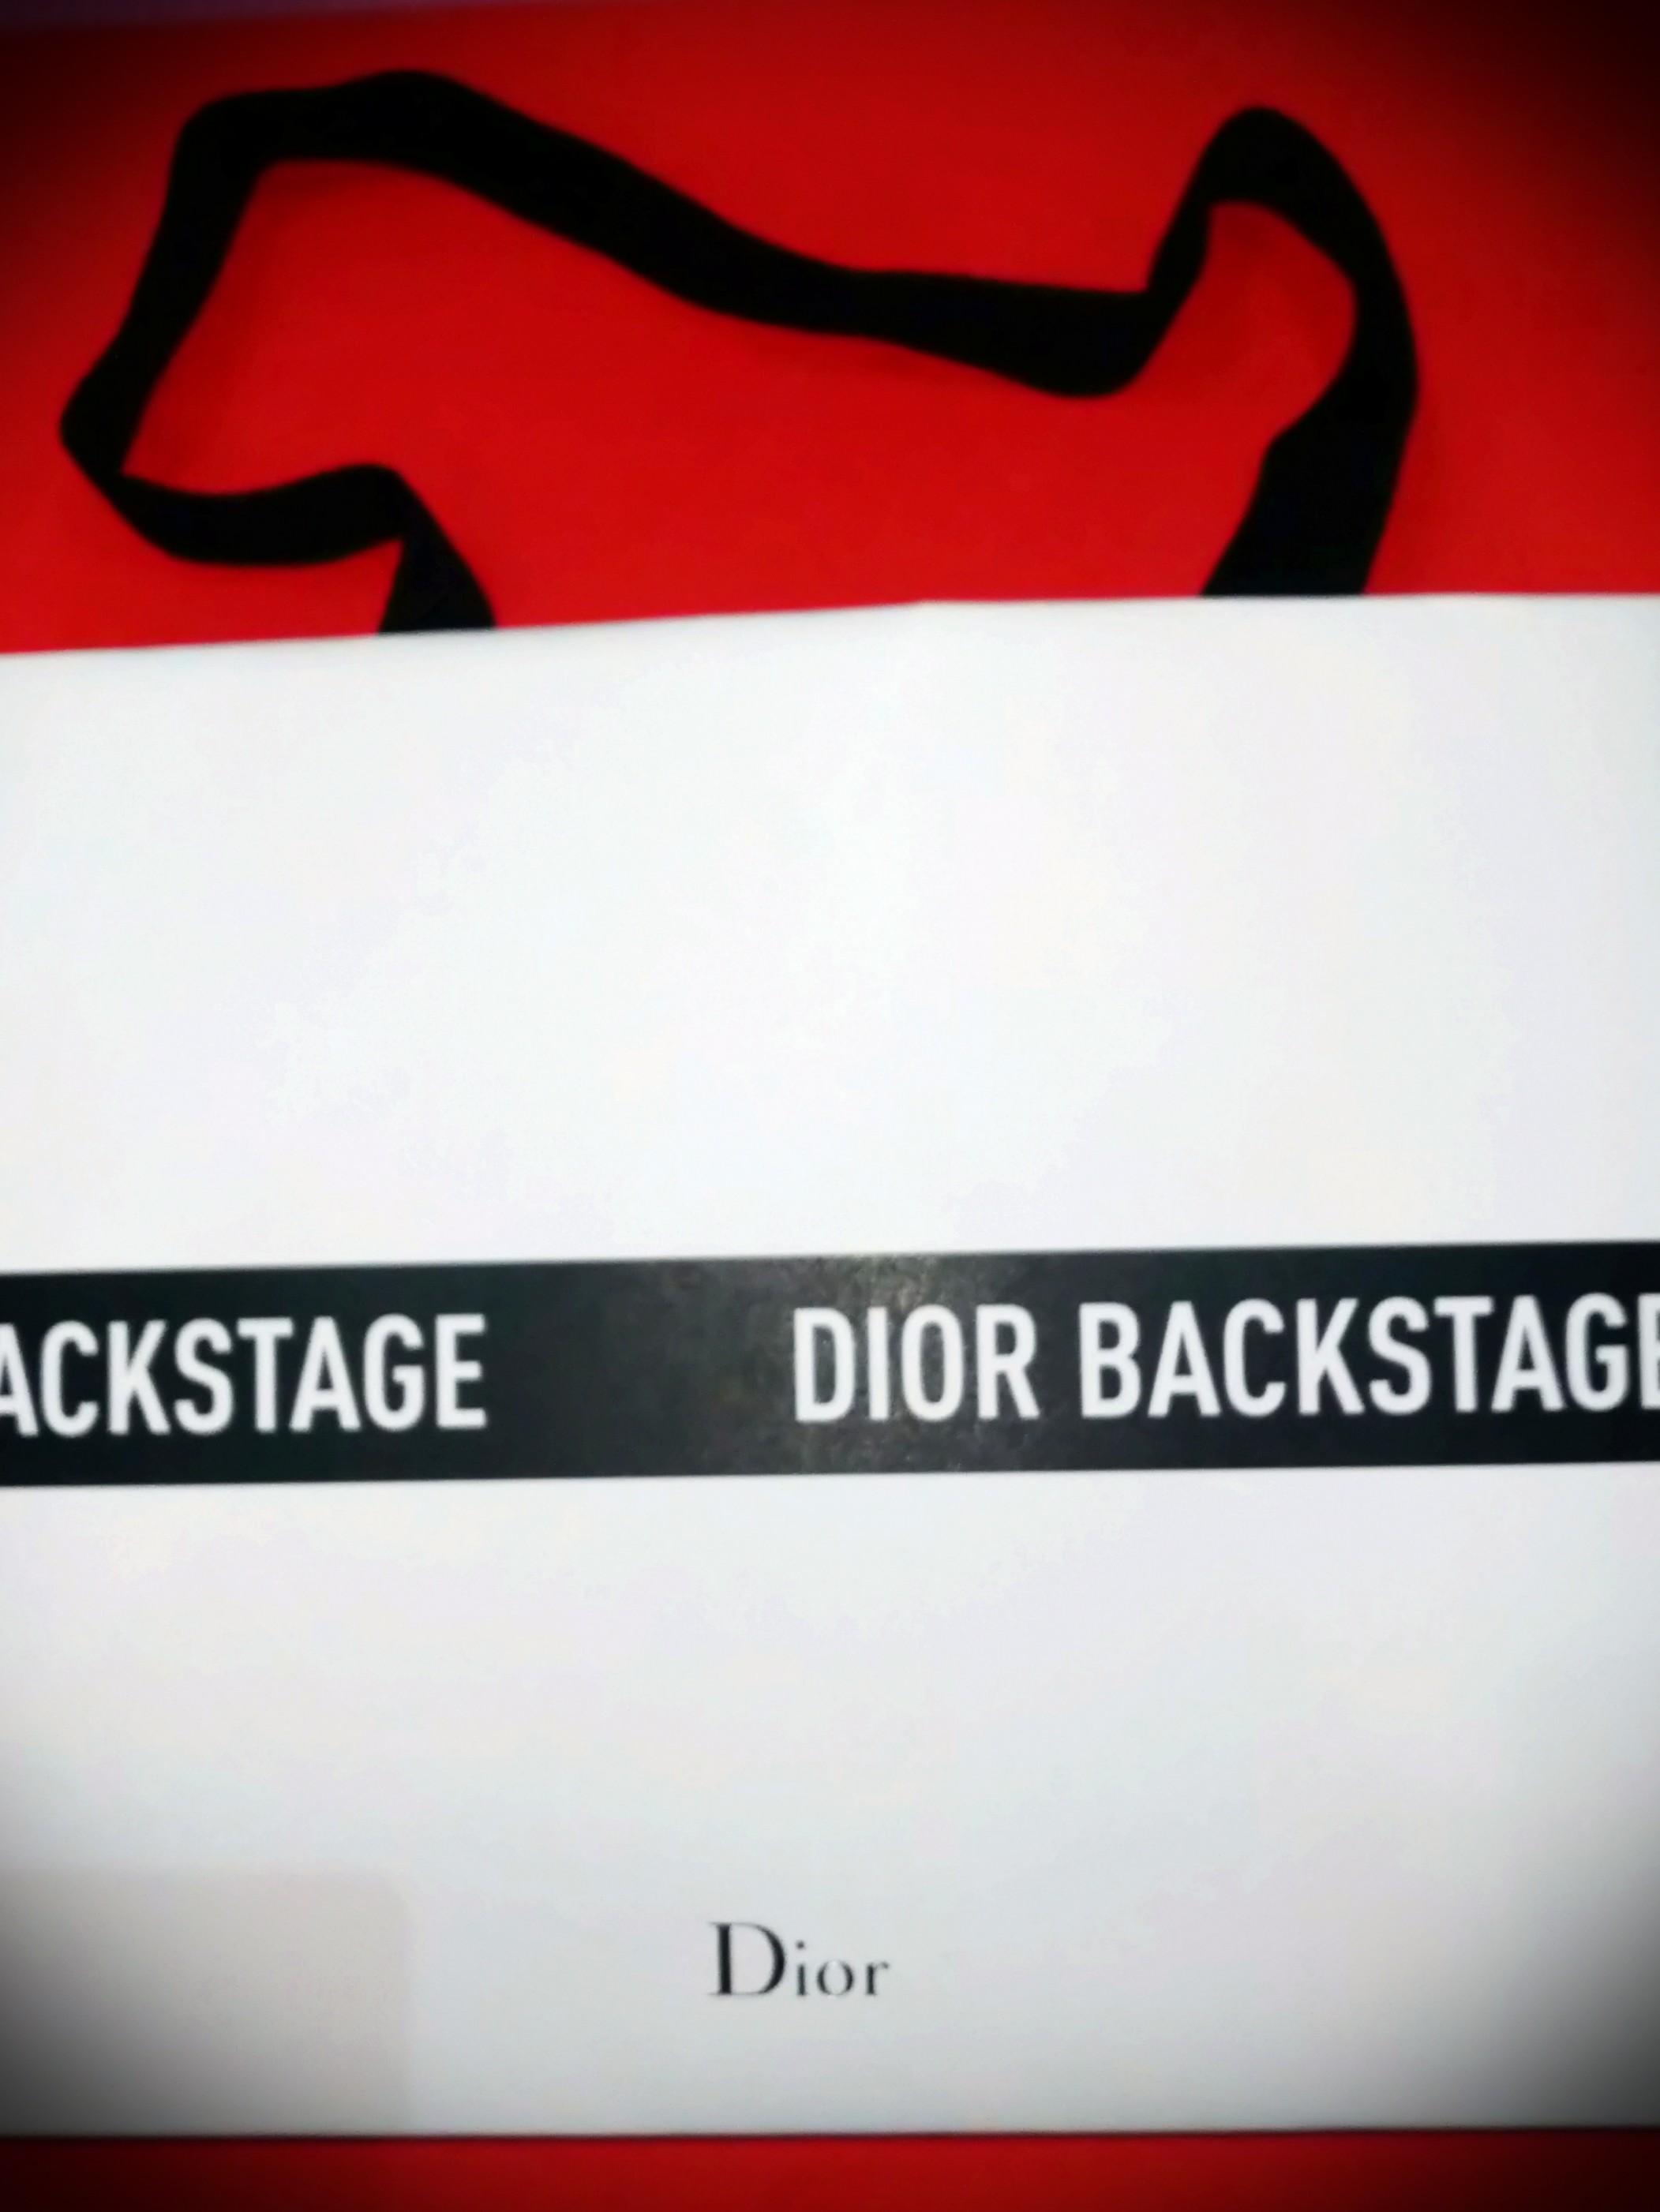 dior backstage bag